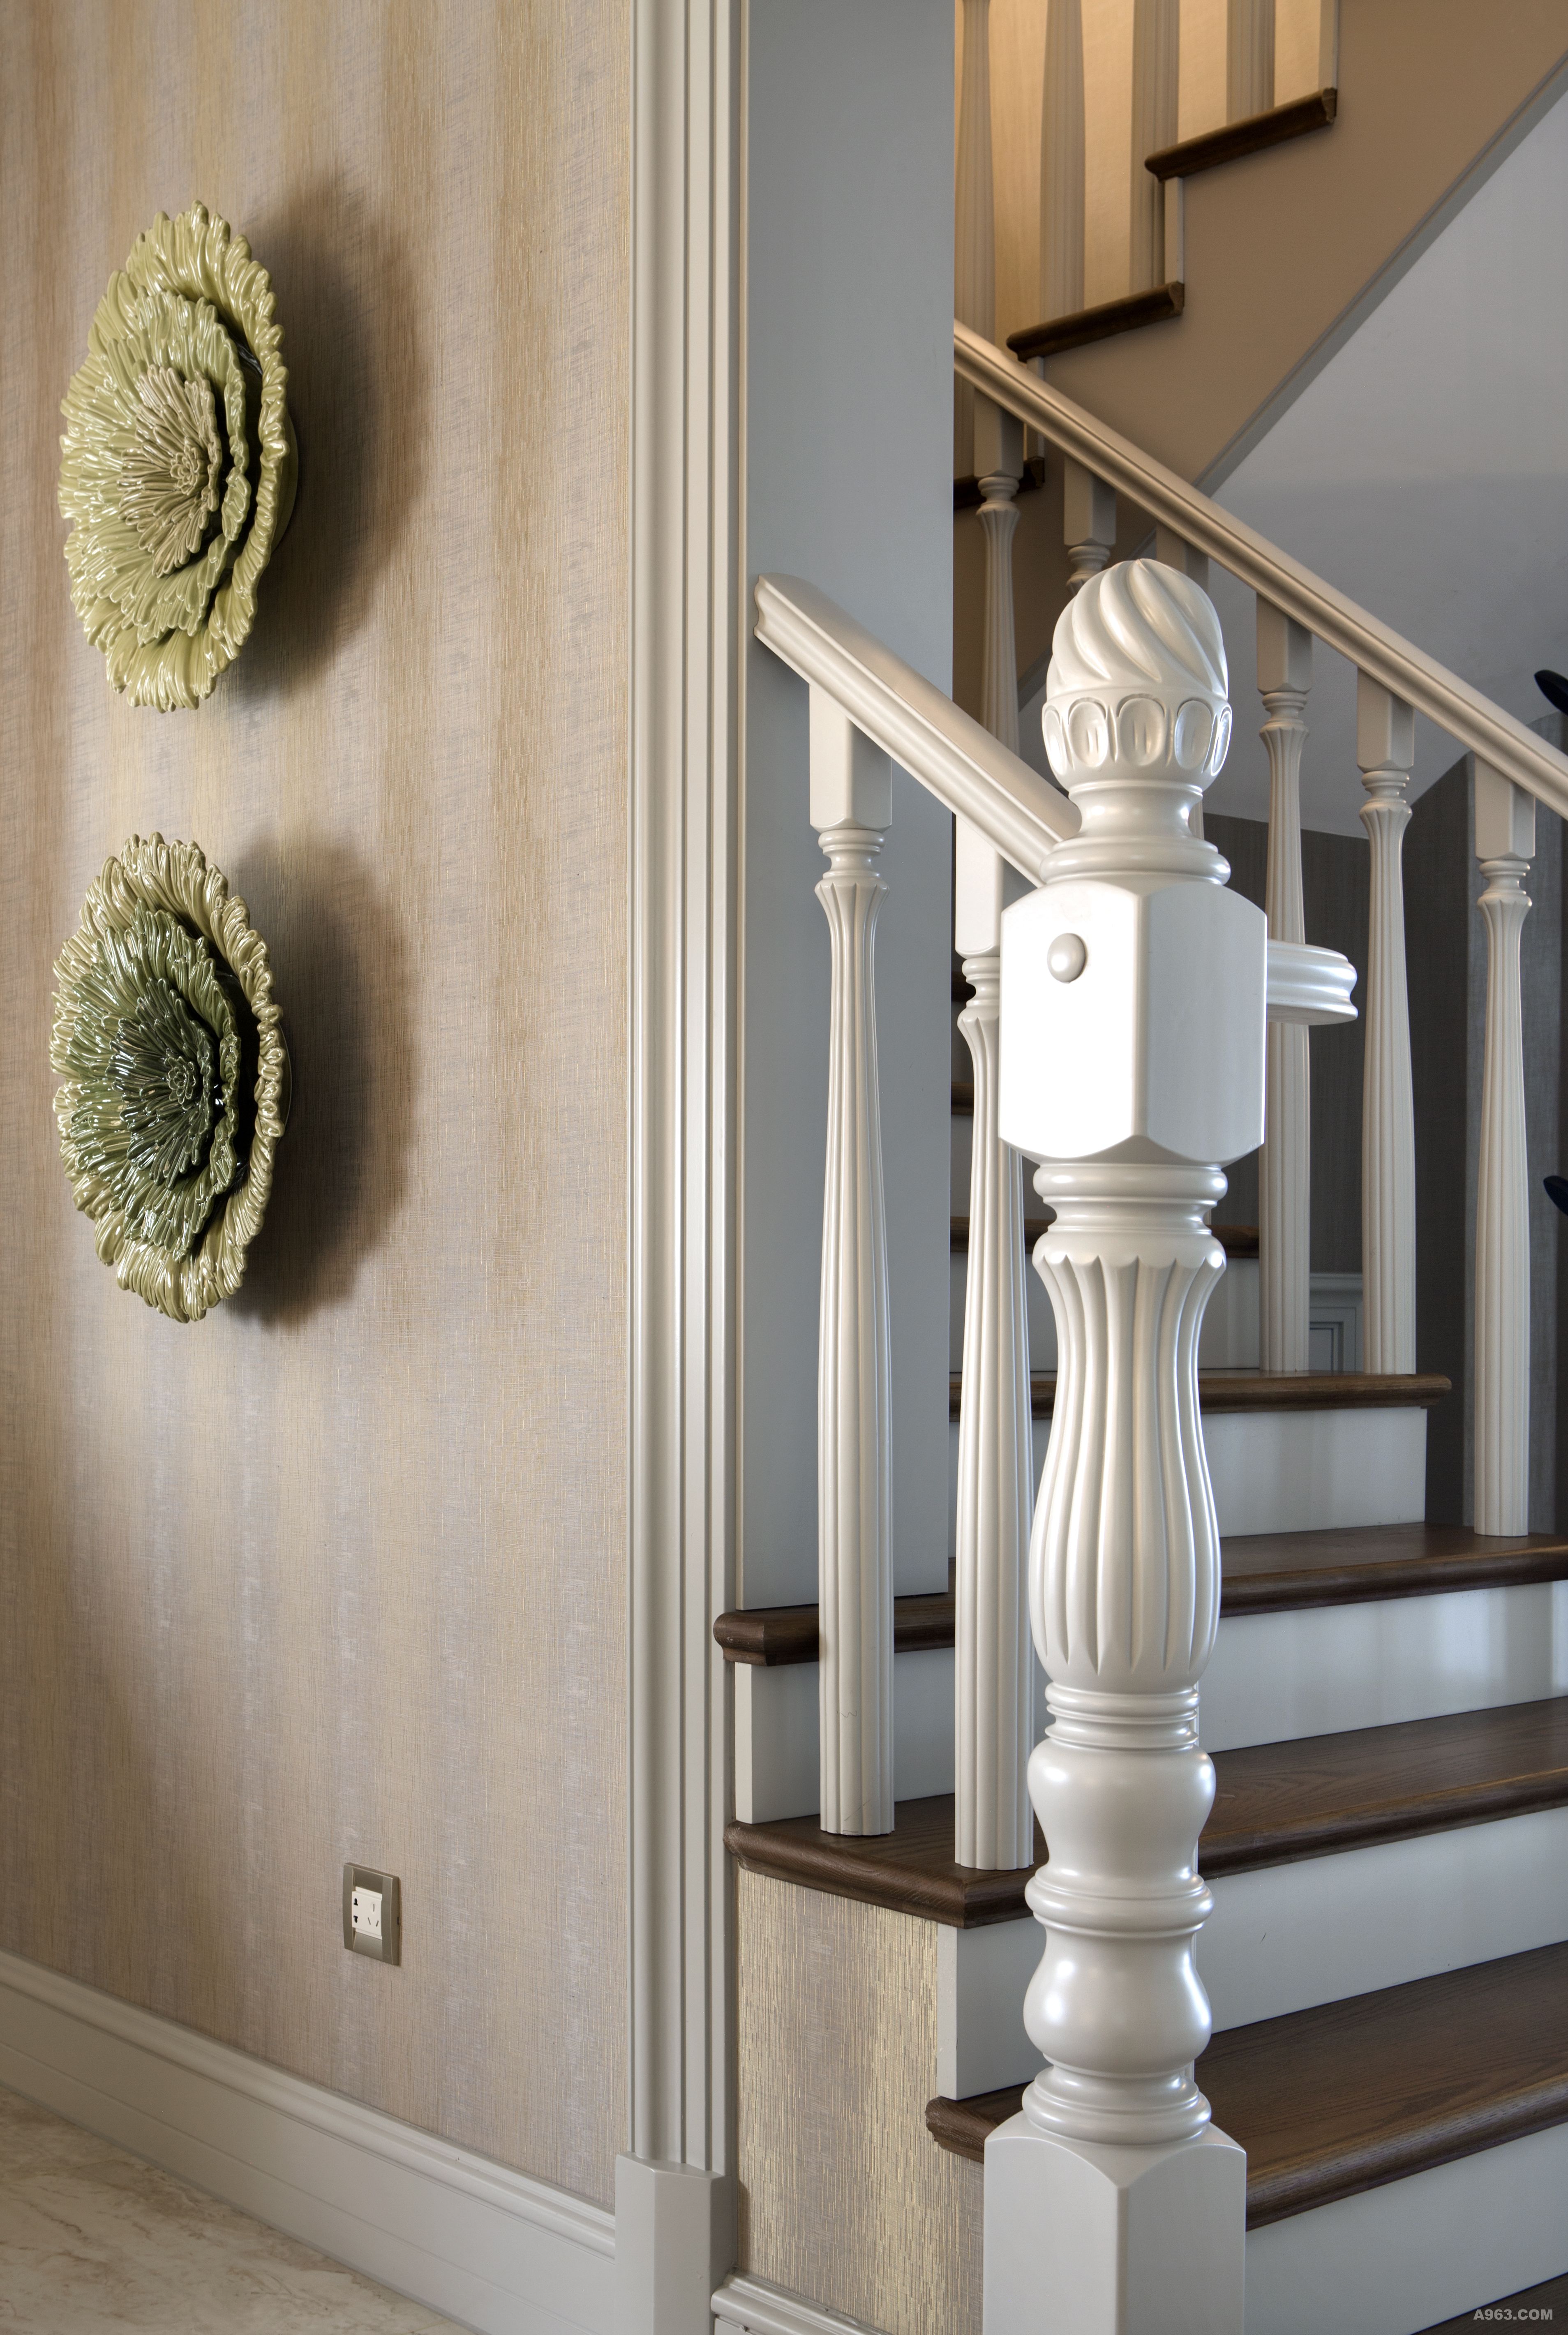 【楼梯】木色的地板搭配白色的扶手,是经典质感的搭配,既有现代感